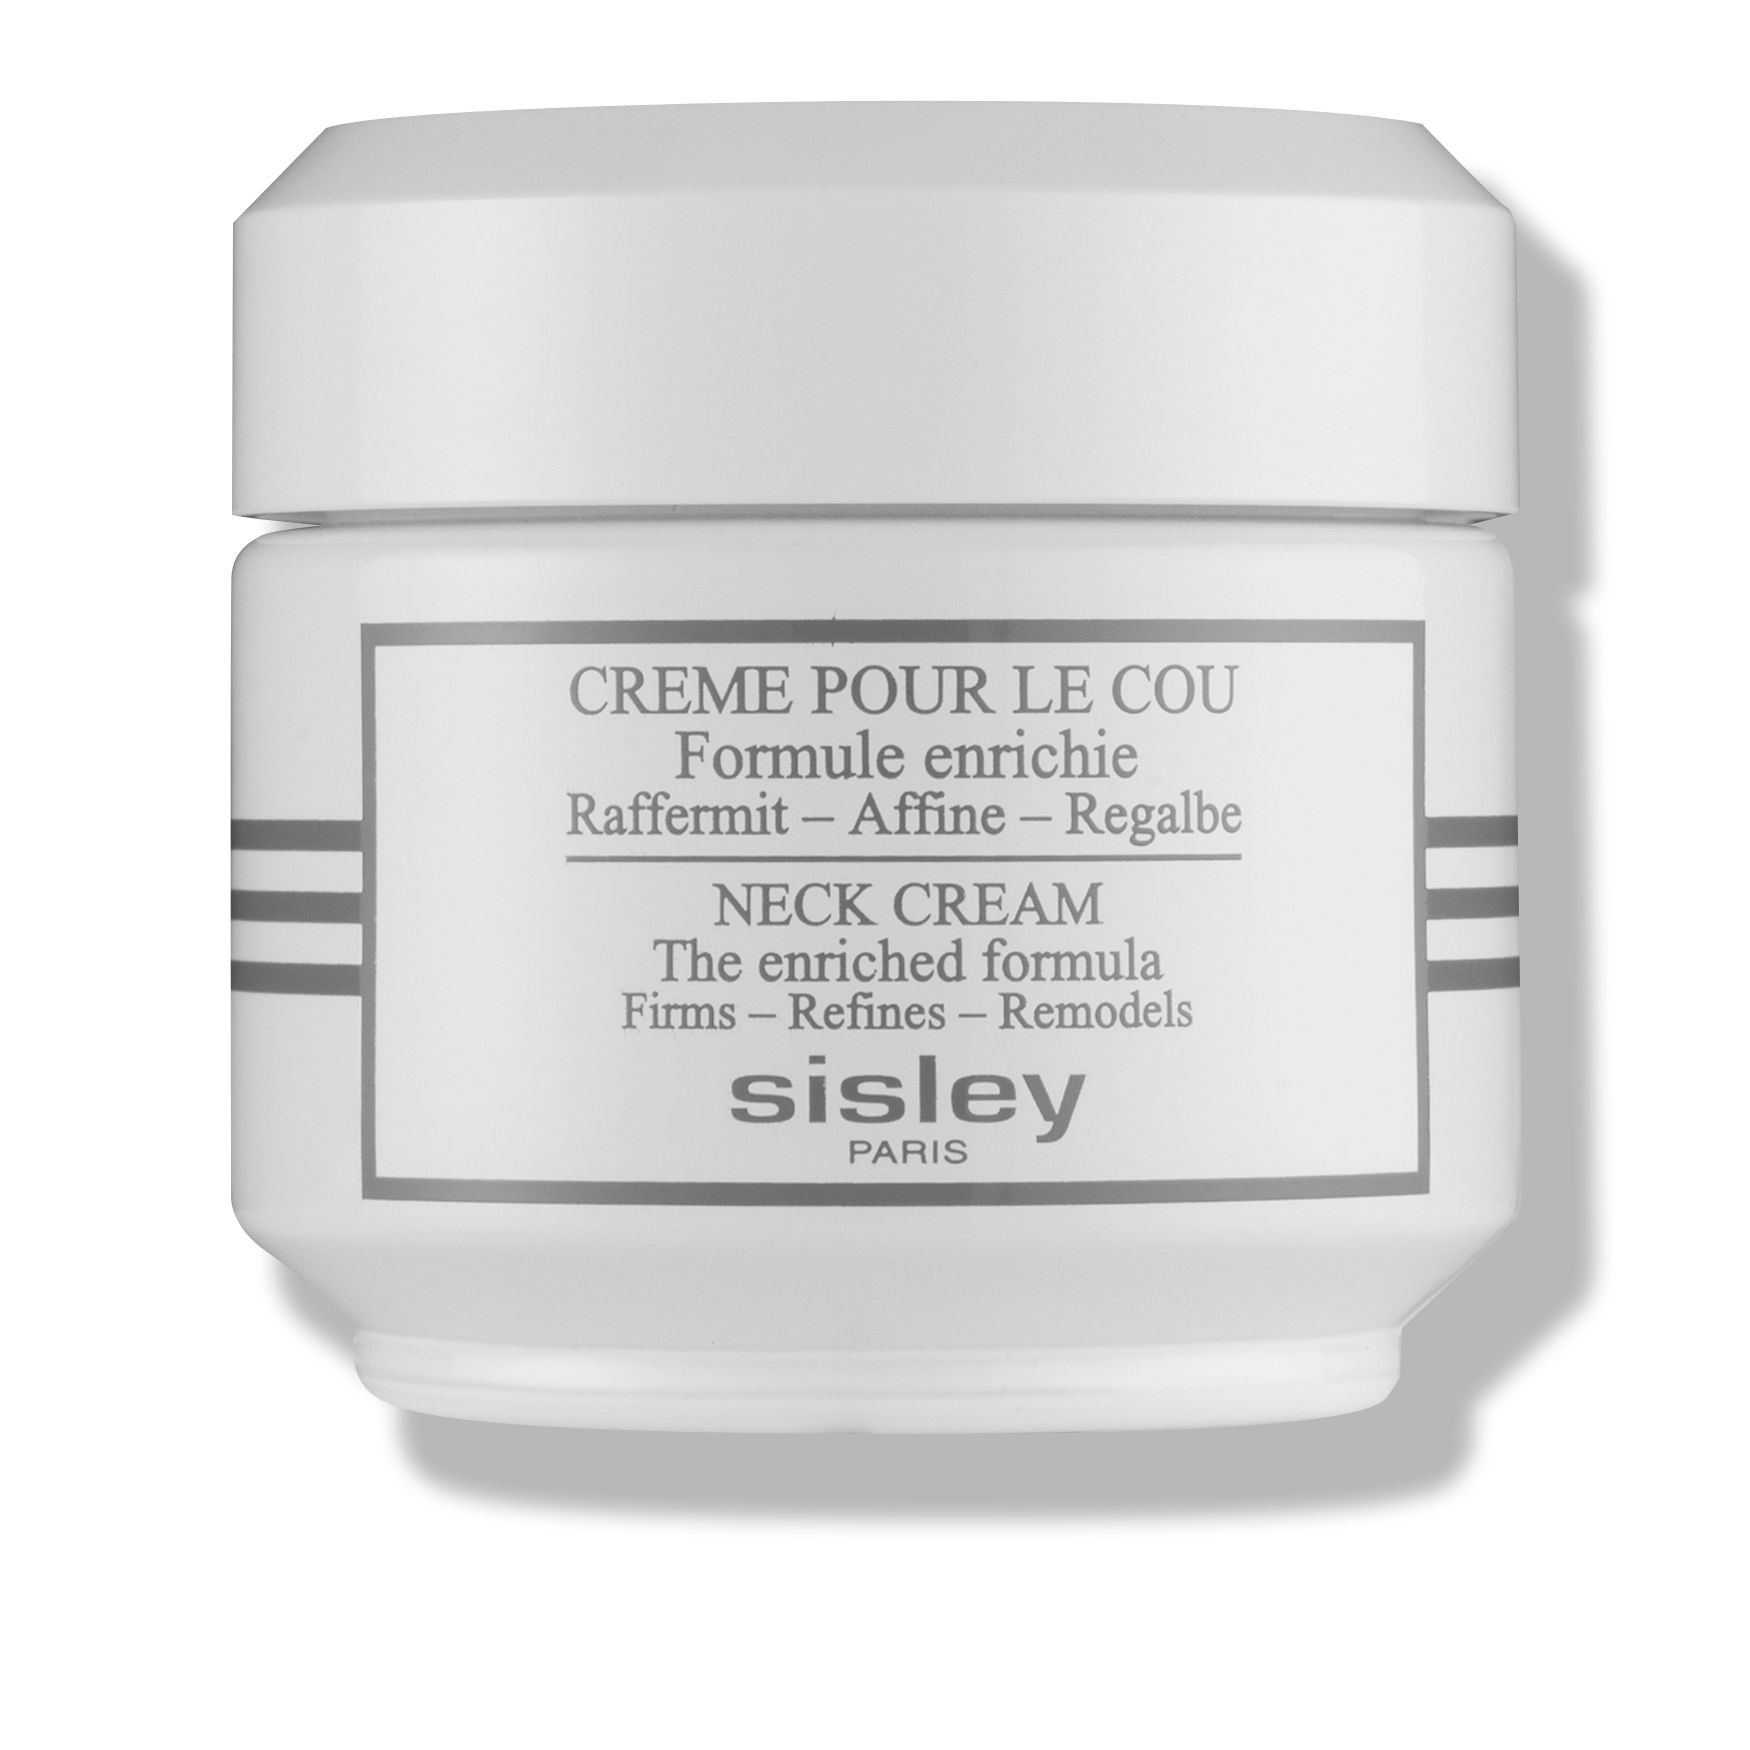 Sisley-Paris Crème pour le cou : La formule enrichie | Space NK